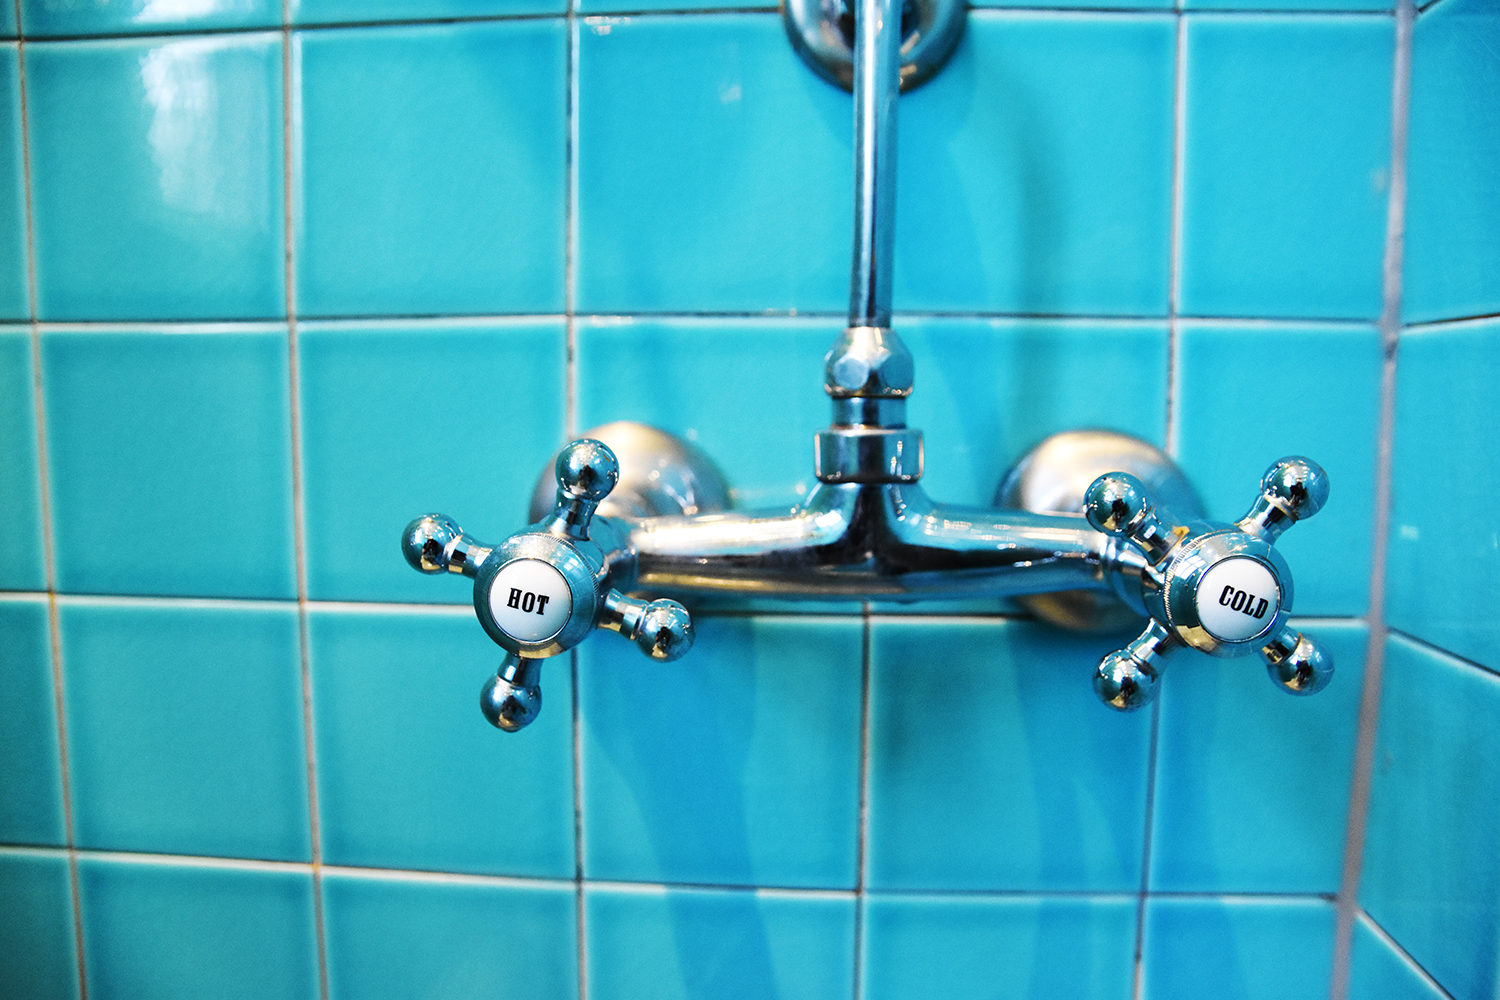 Nostalgici rubinetti di vecchia scuola nelle docce. Foto: Vil